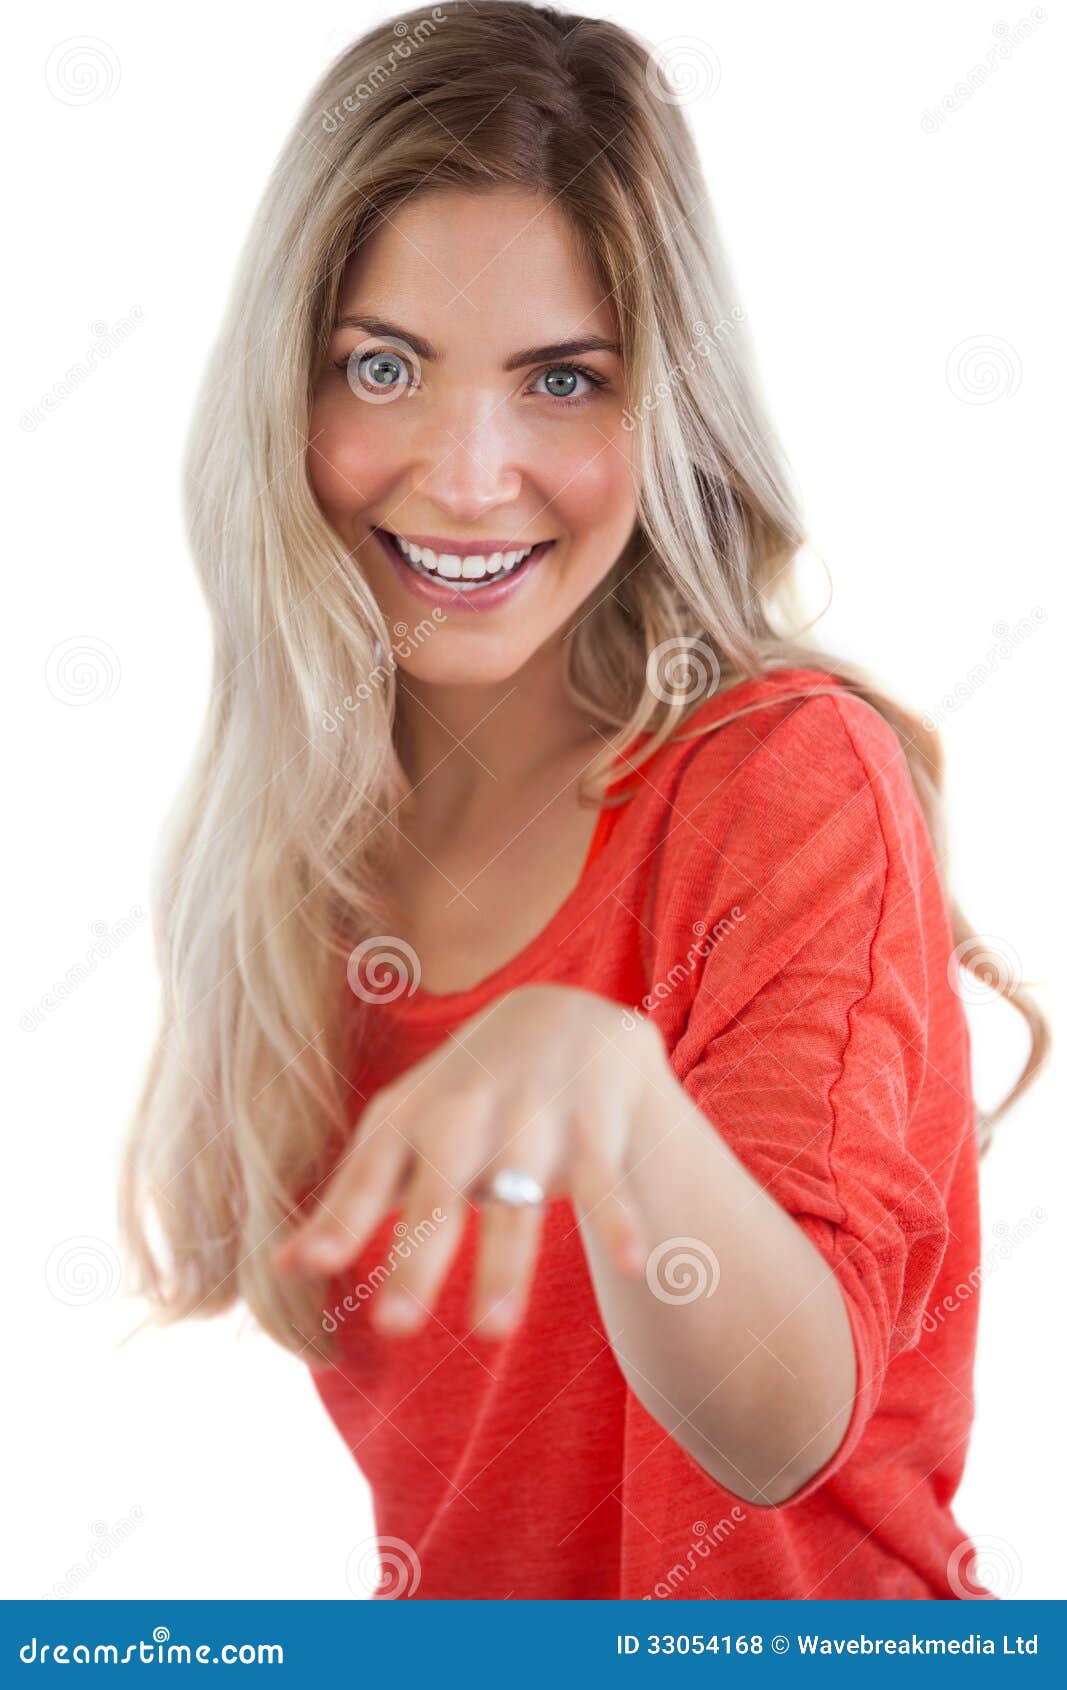 Jeune femme blonde avec la bague de fianÃ§ailles sur sa main.